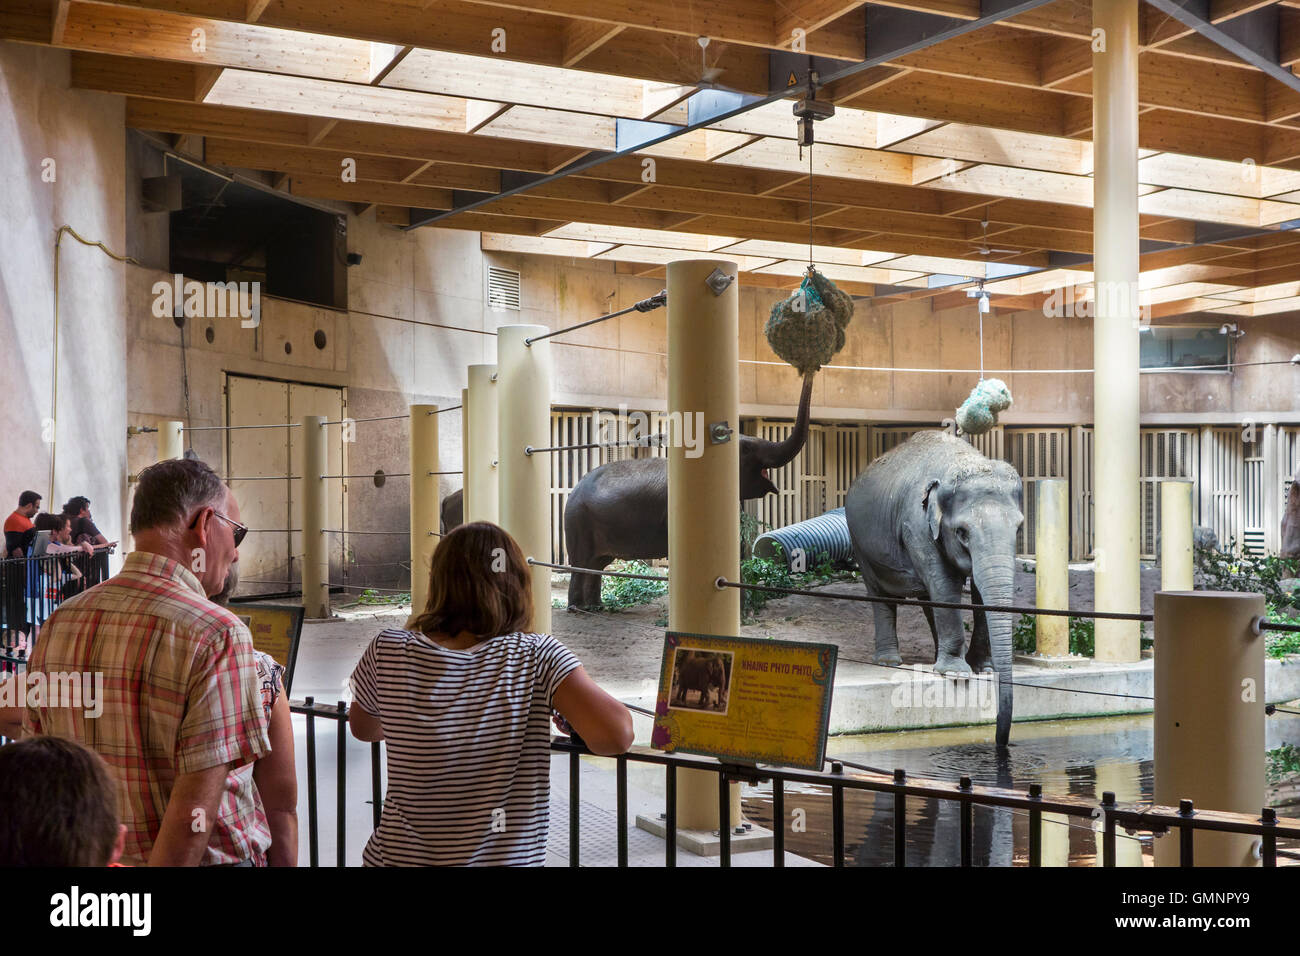 Les visiteurs à la recherche des éléphants asiatiques à l'Asiatique / éléphant (Elephas maximus) à l'intérieur de l'enclos au zoo de Planckendael, Belgique Banque D'Images